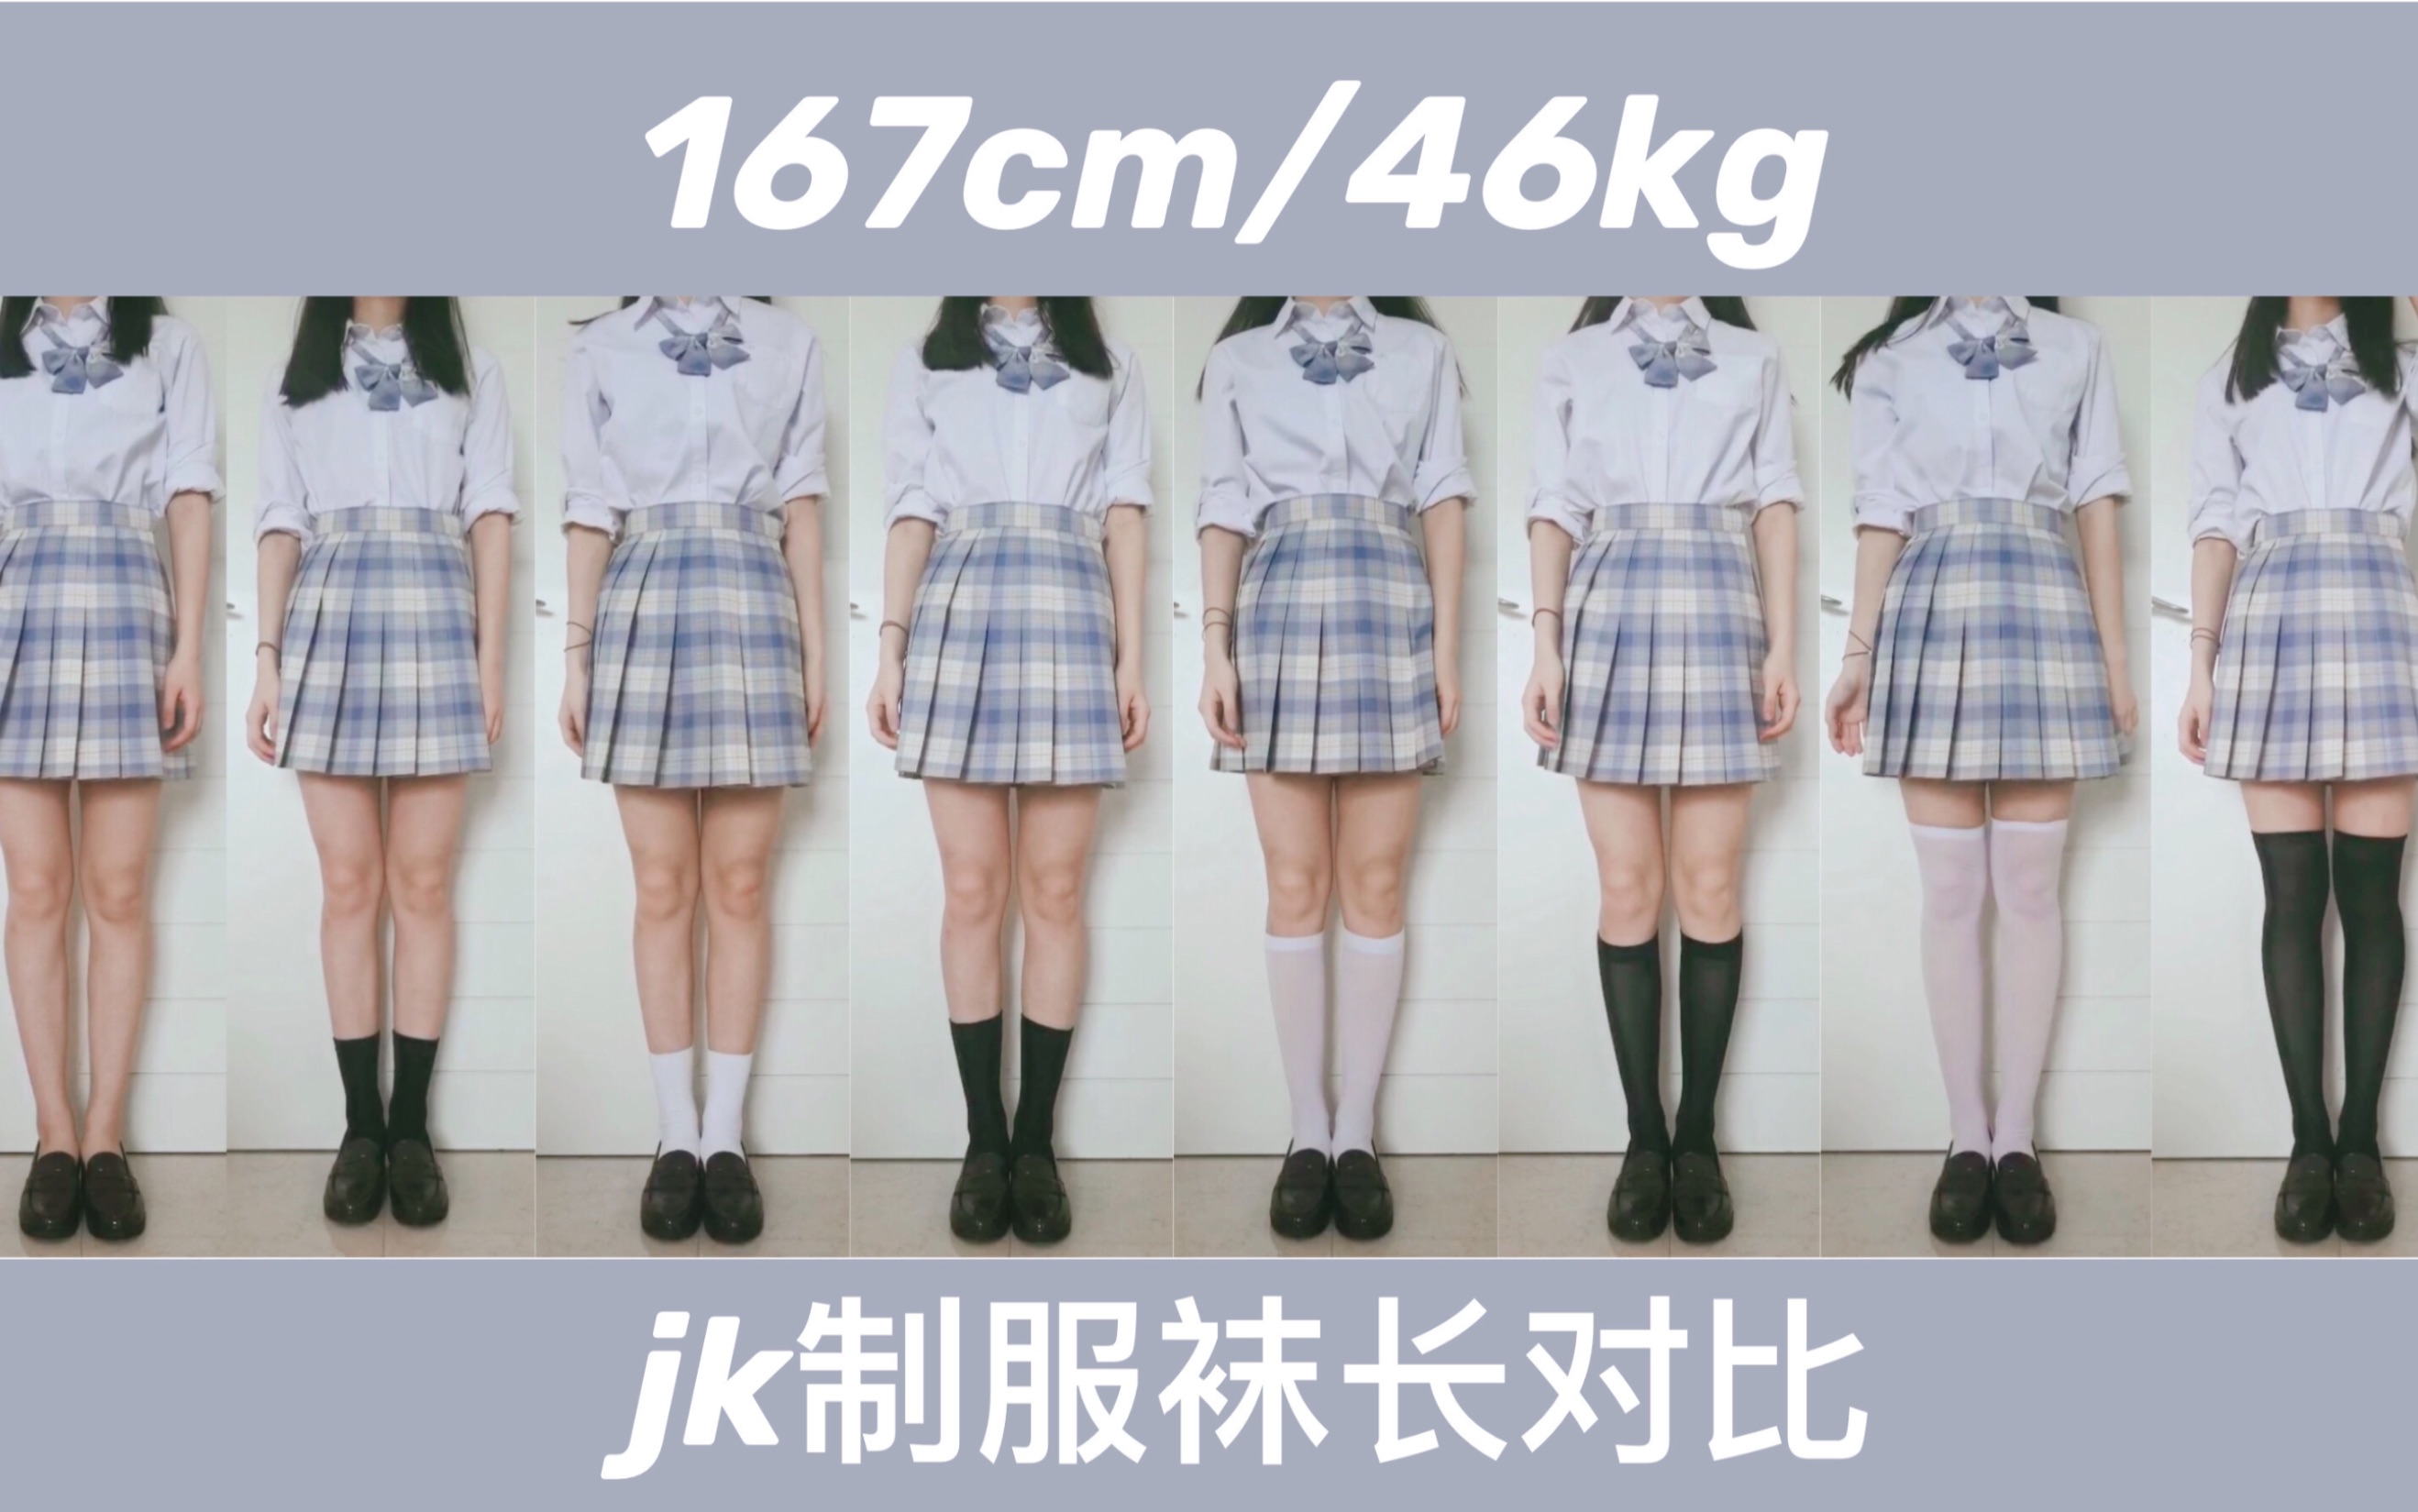 【阿侑】jk制服袜长对比测评/167cm/46kg/腿不直/梨形身材膝超身